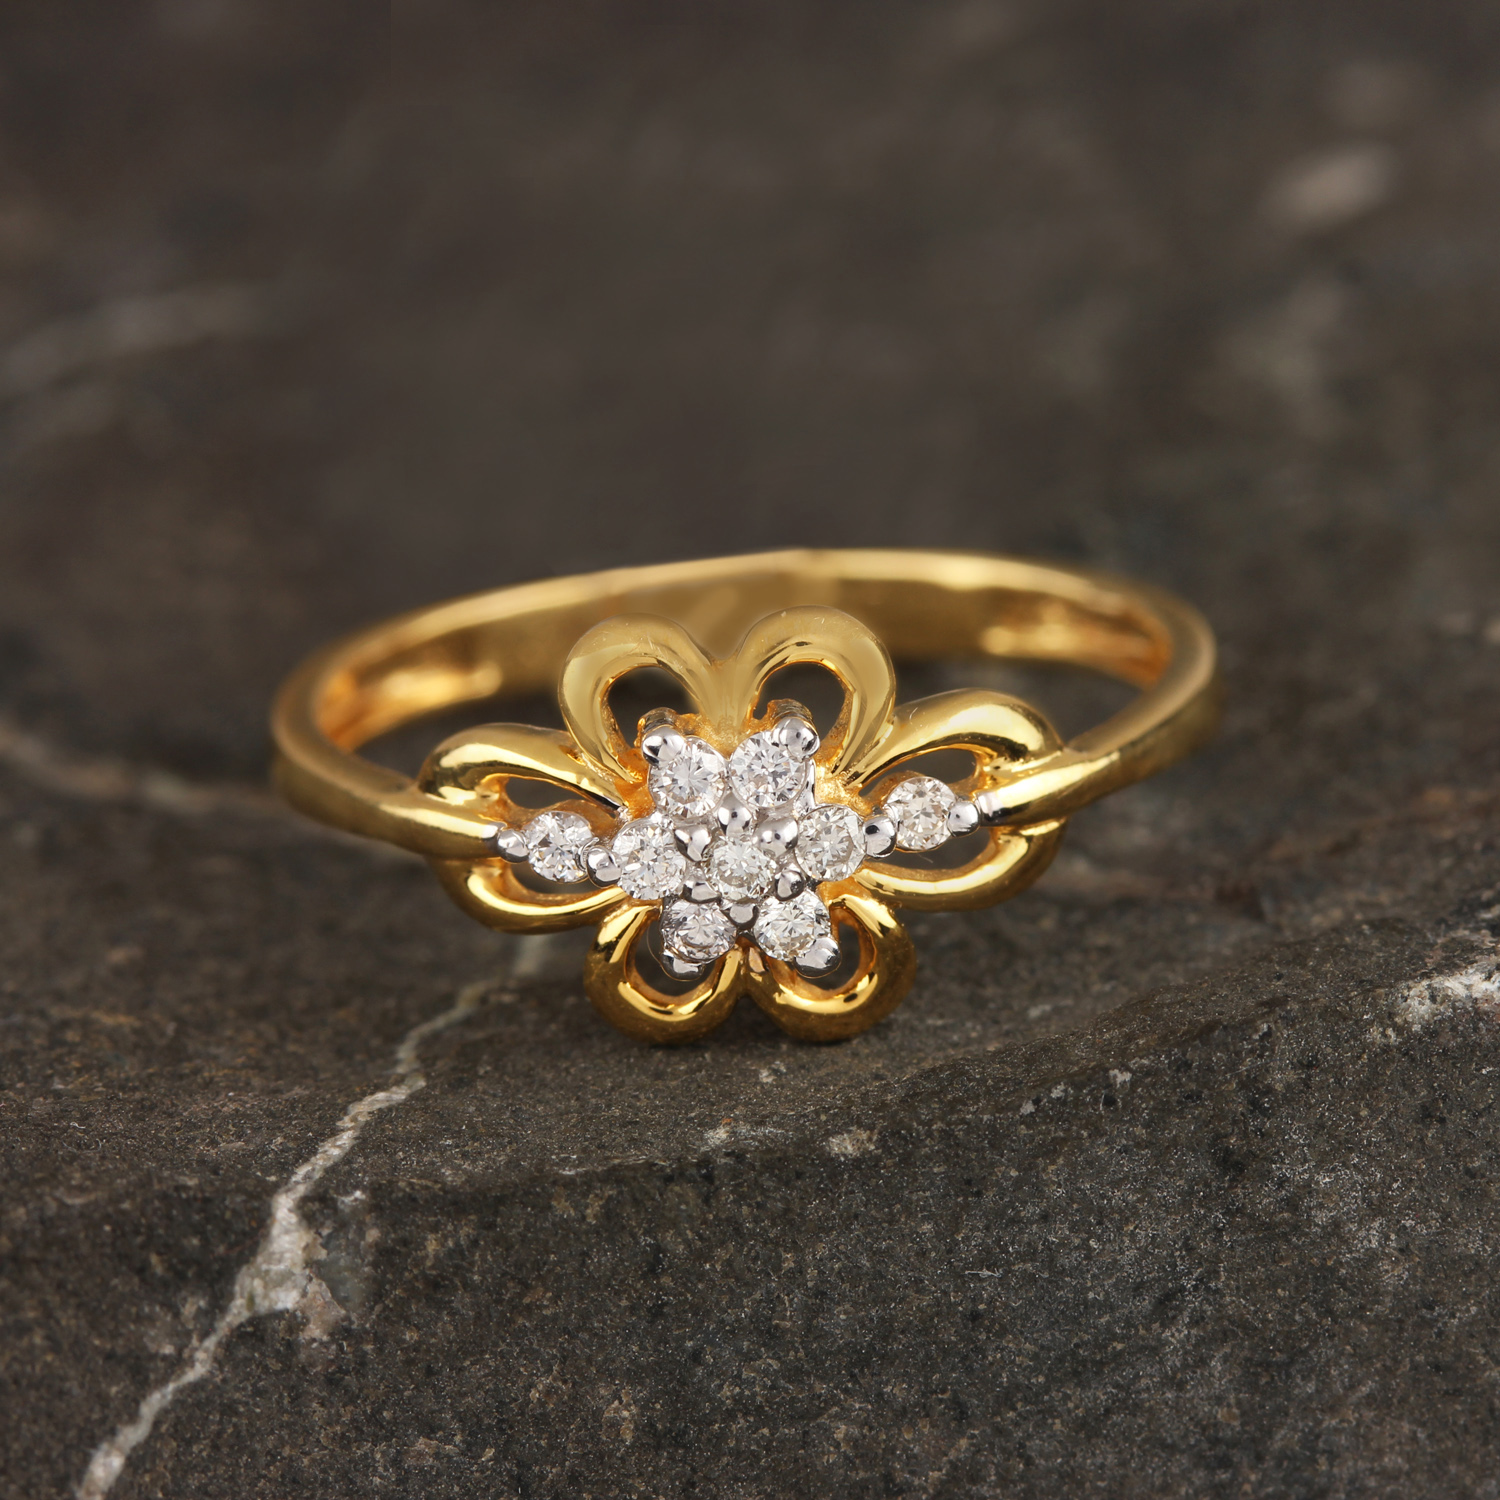 Flower Design In Diamond Ring